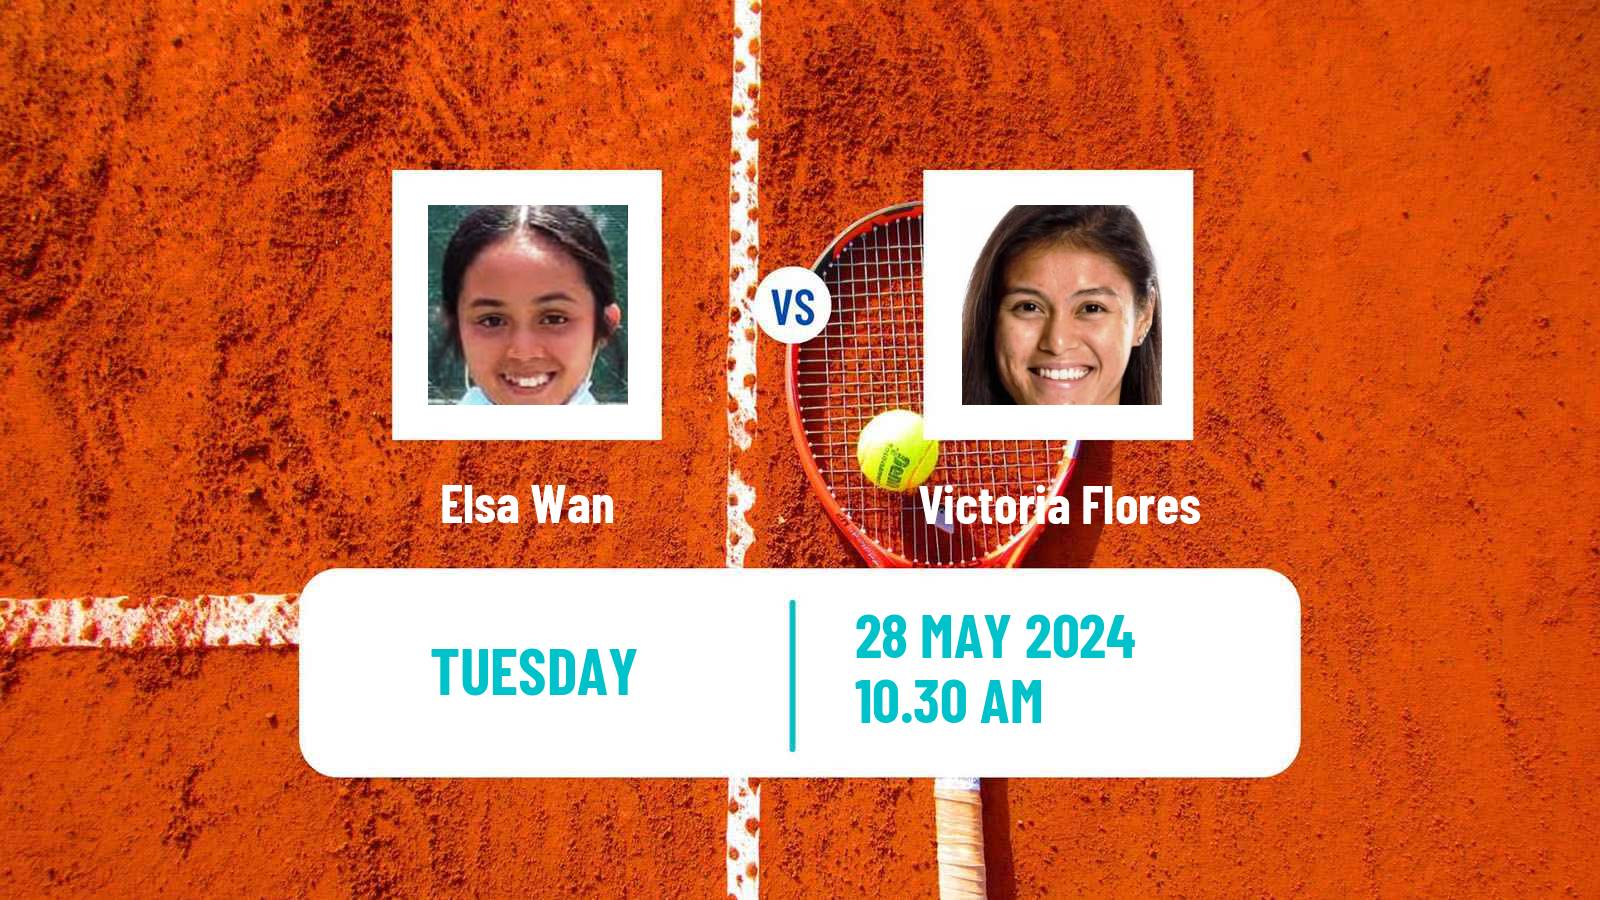 Tennis ITF W35 Santo Domingo 4 Women Elsa Wan - Victoria Flores